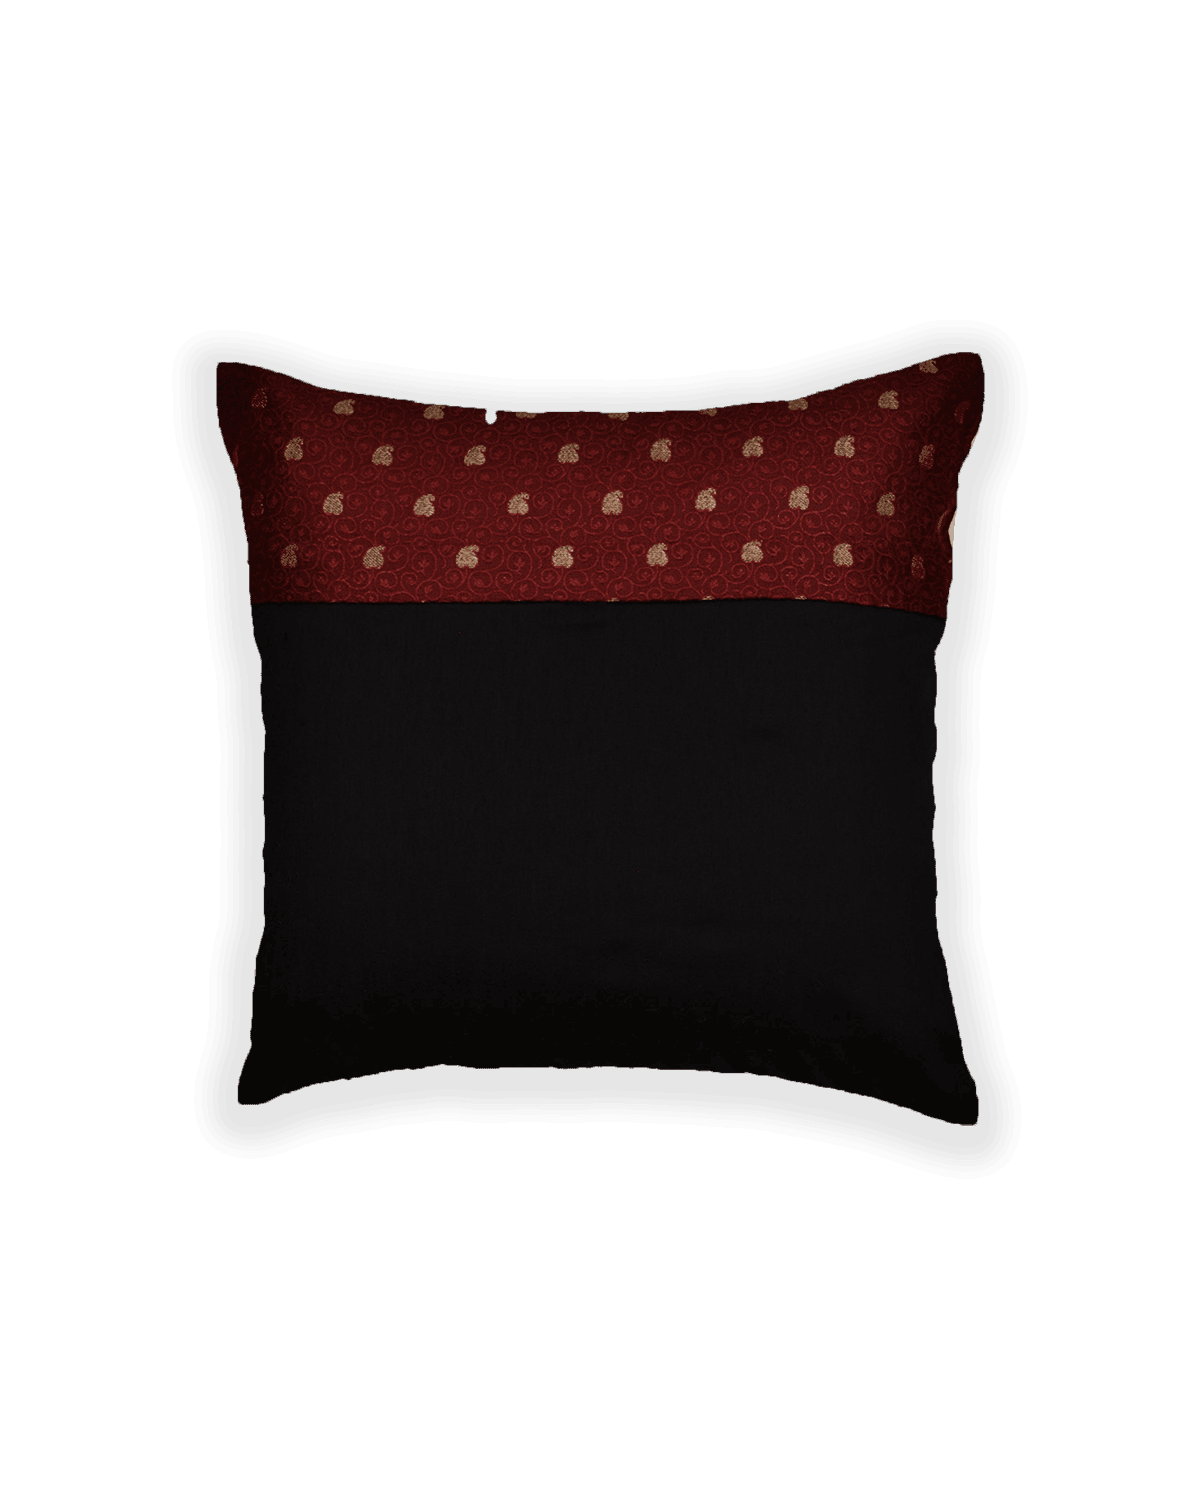 Maroon Banarasi Tanchoi Brocade Poly Cotton Cushion Cover 16" - By HolyWeaves, Benares